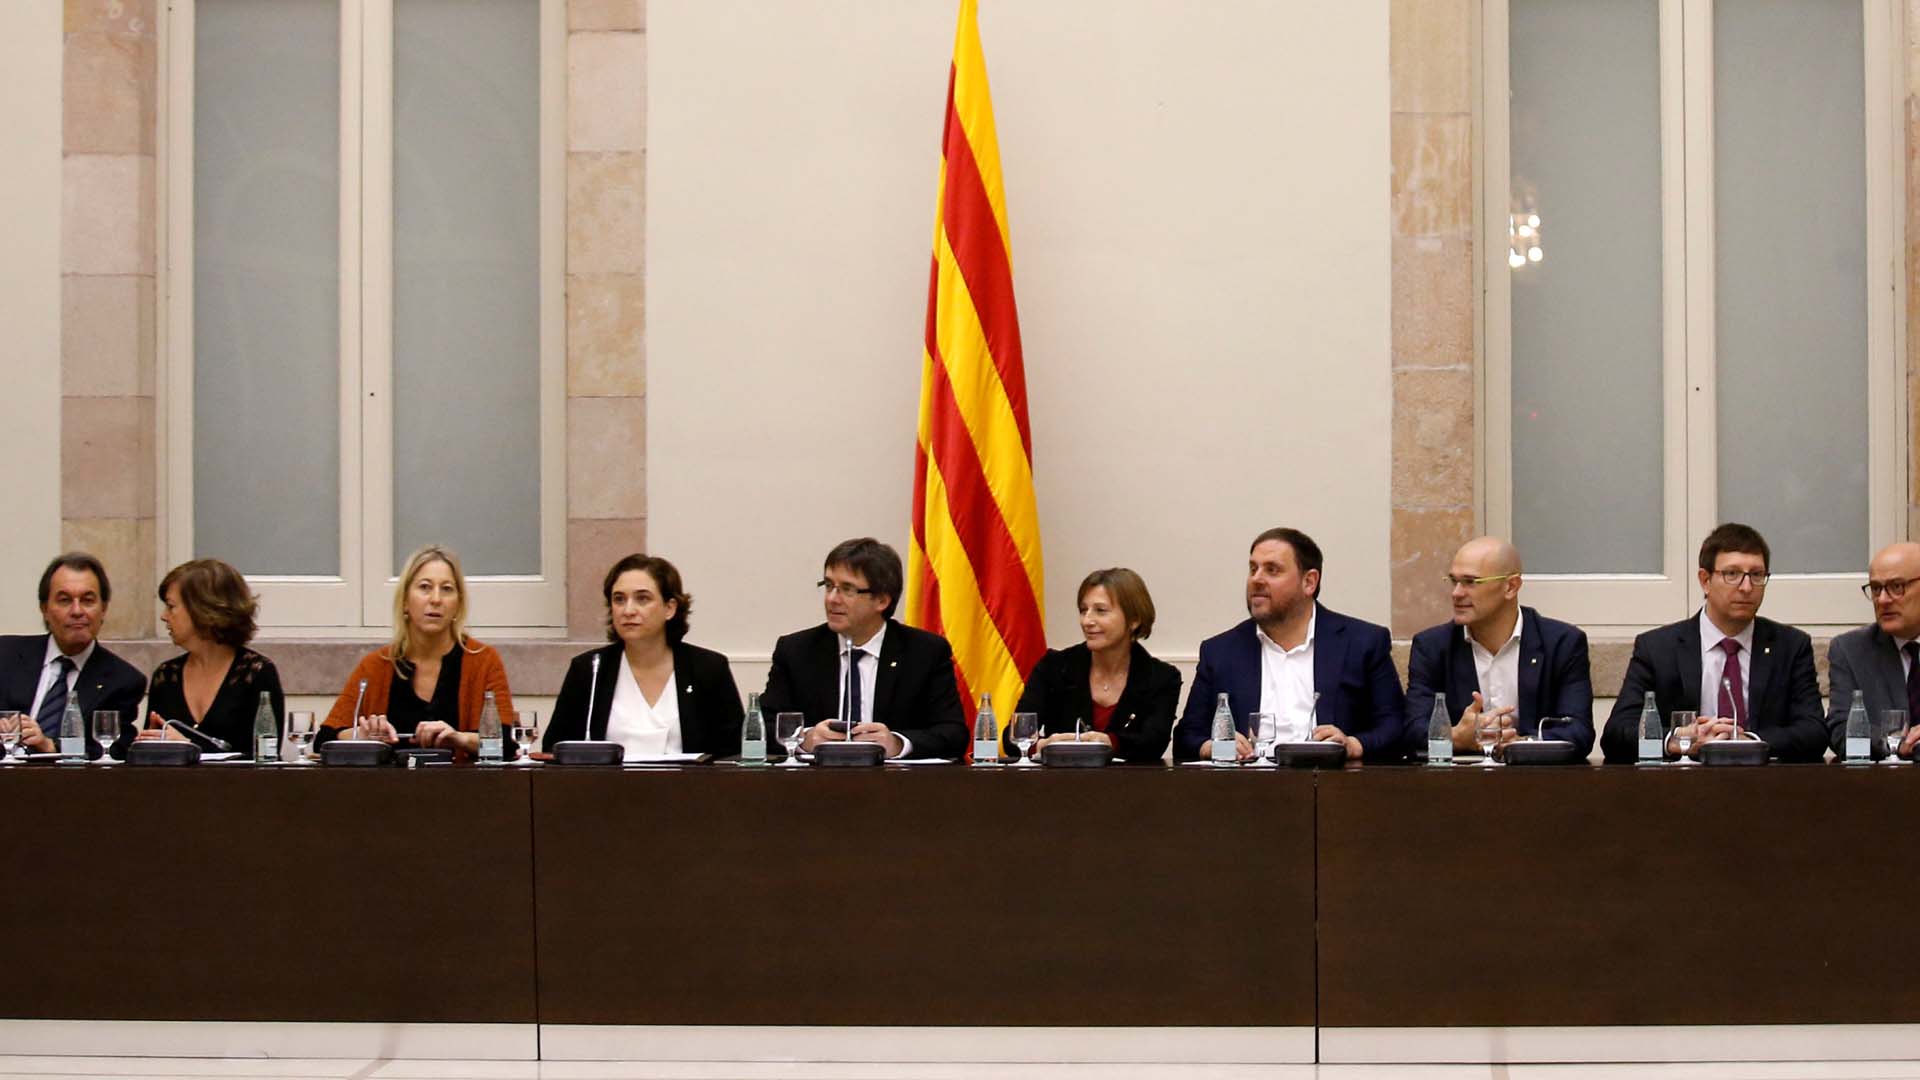 La región española buscará en 2017 un cambio legal que permita un referéndum para su independencia